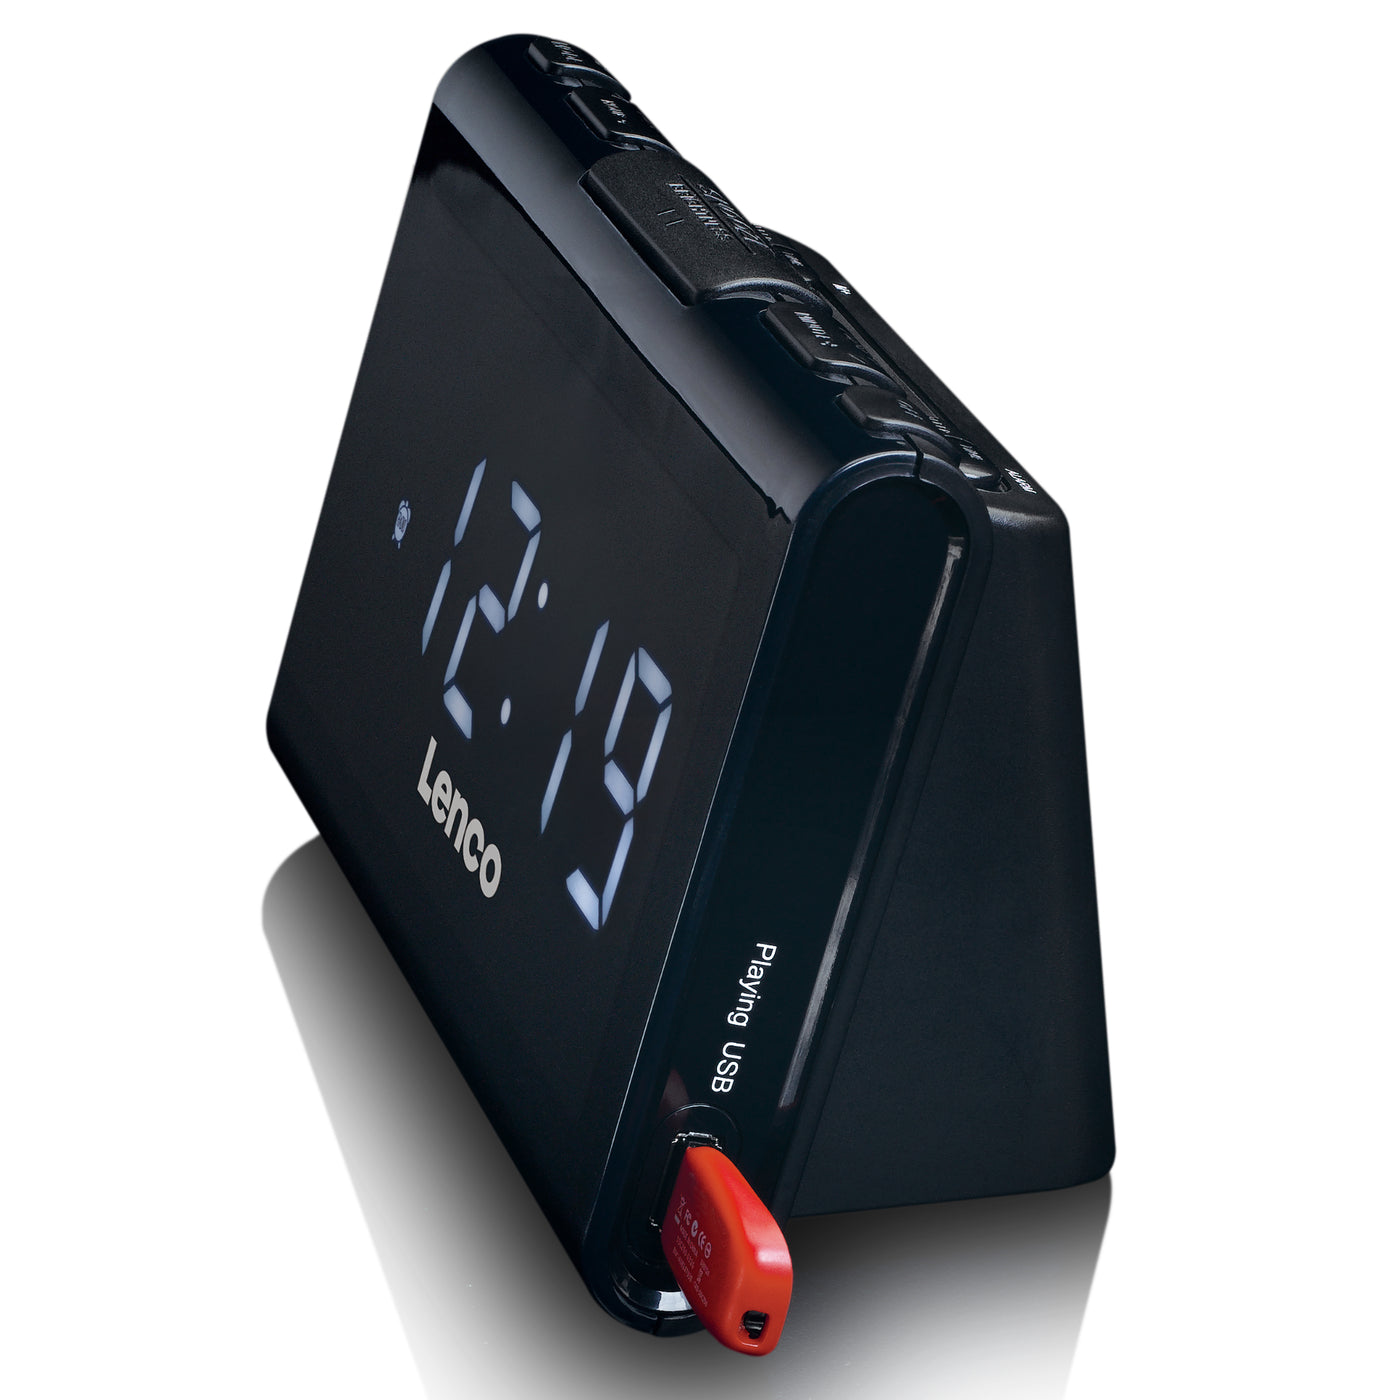 LENCO CR-525BK - FM Wekkerradio met USB-speler en USB-oplader - Zwart